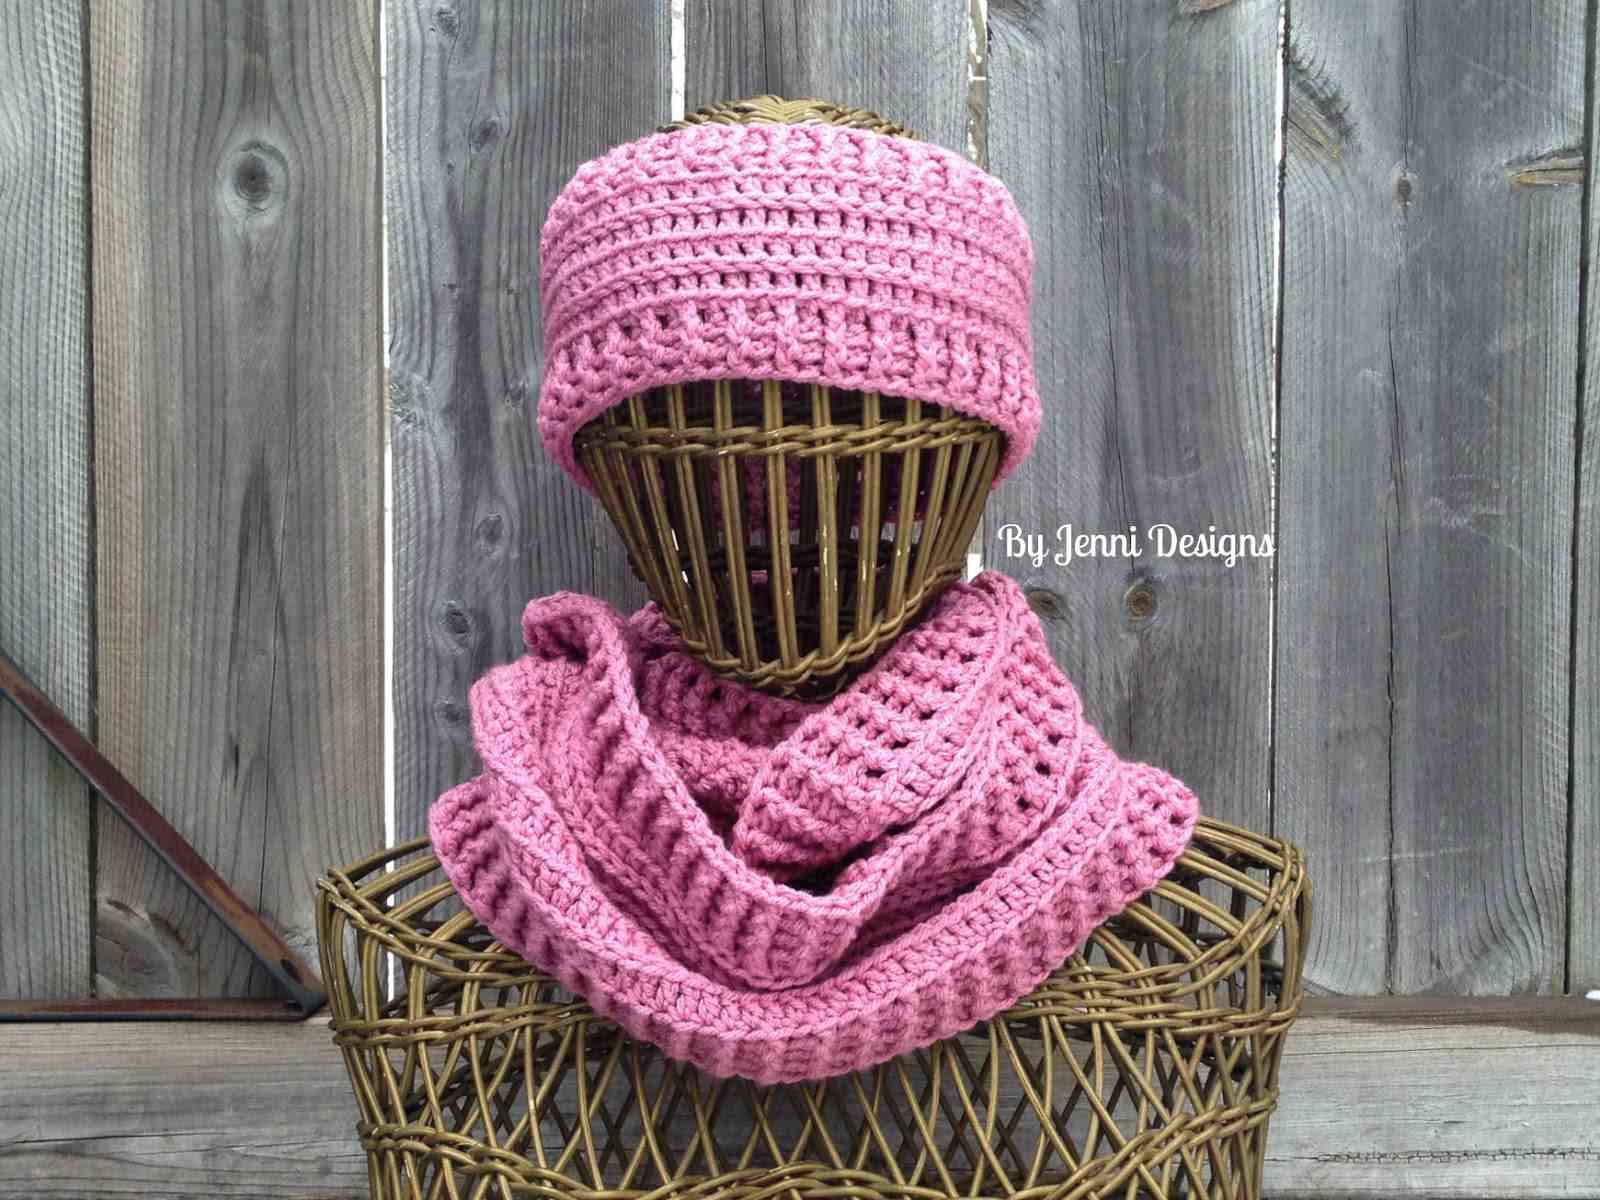 Crochet Headbands Ear Warmers Patterns Free 9 Free Crochet Ear Warmer Patterns